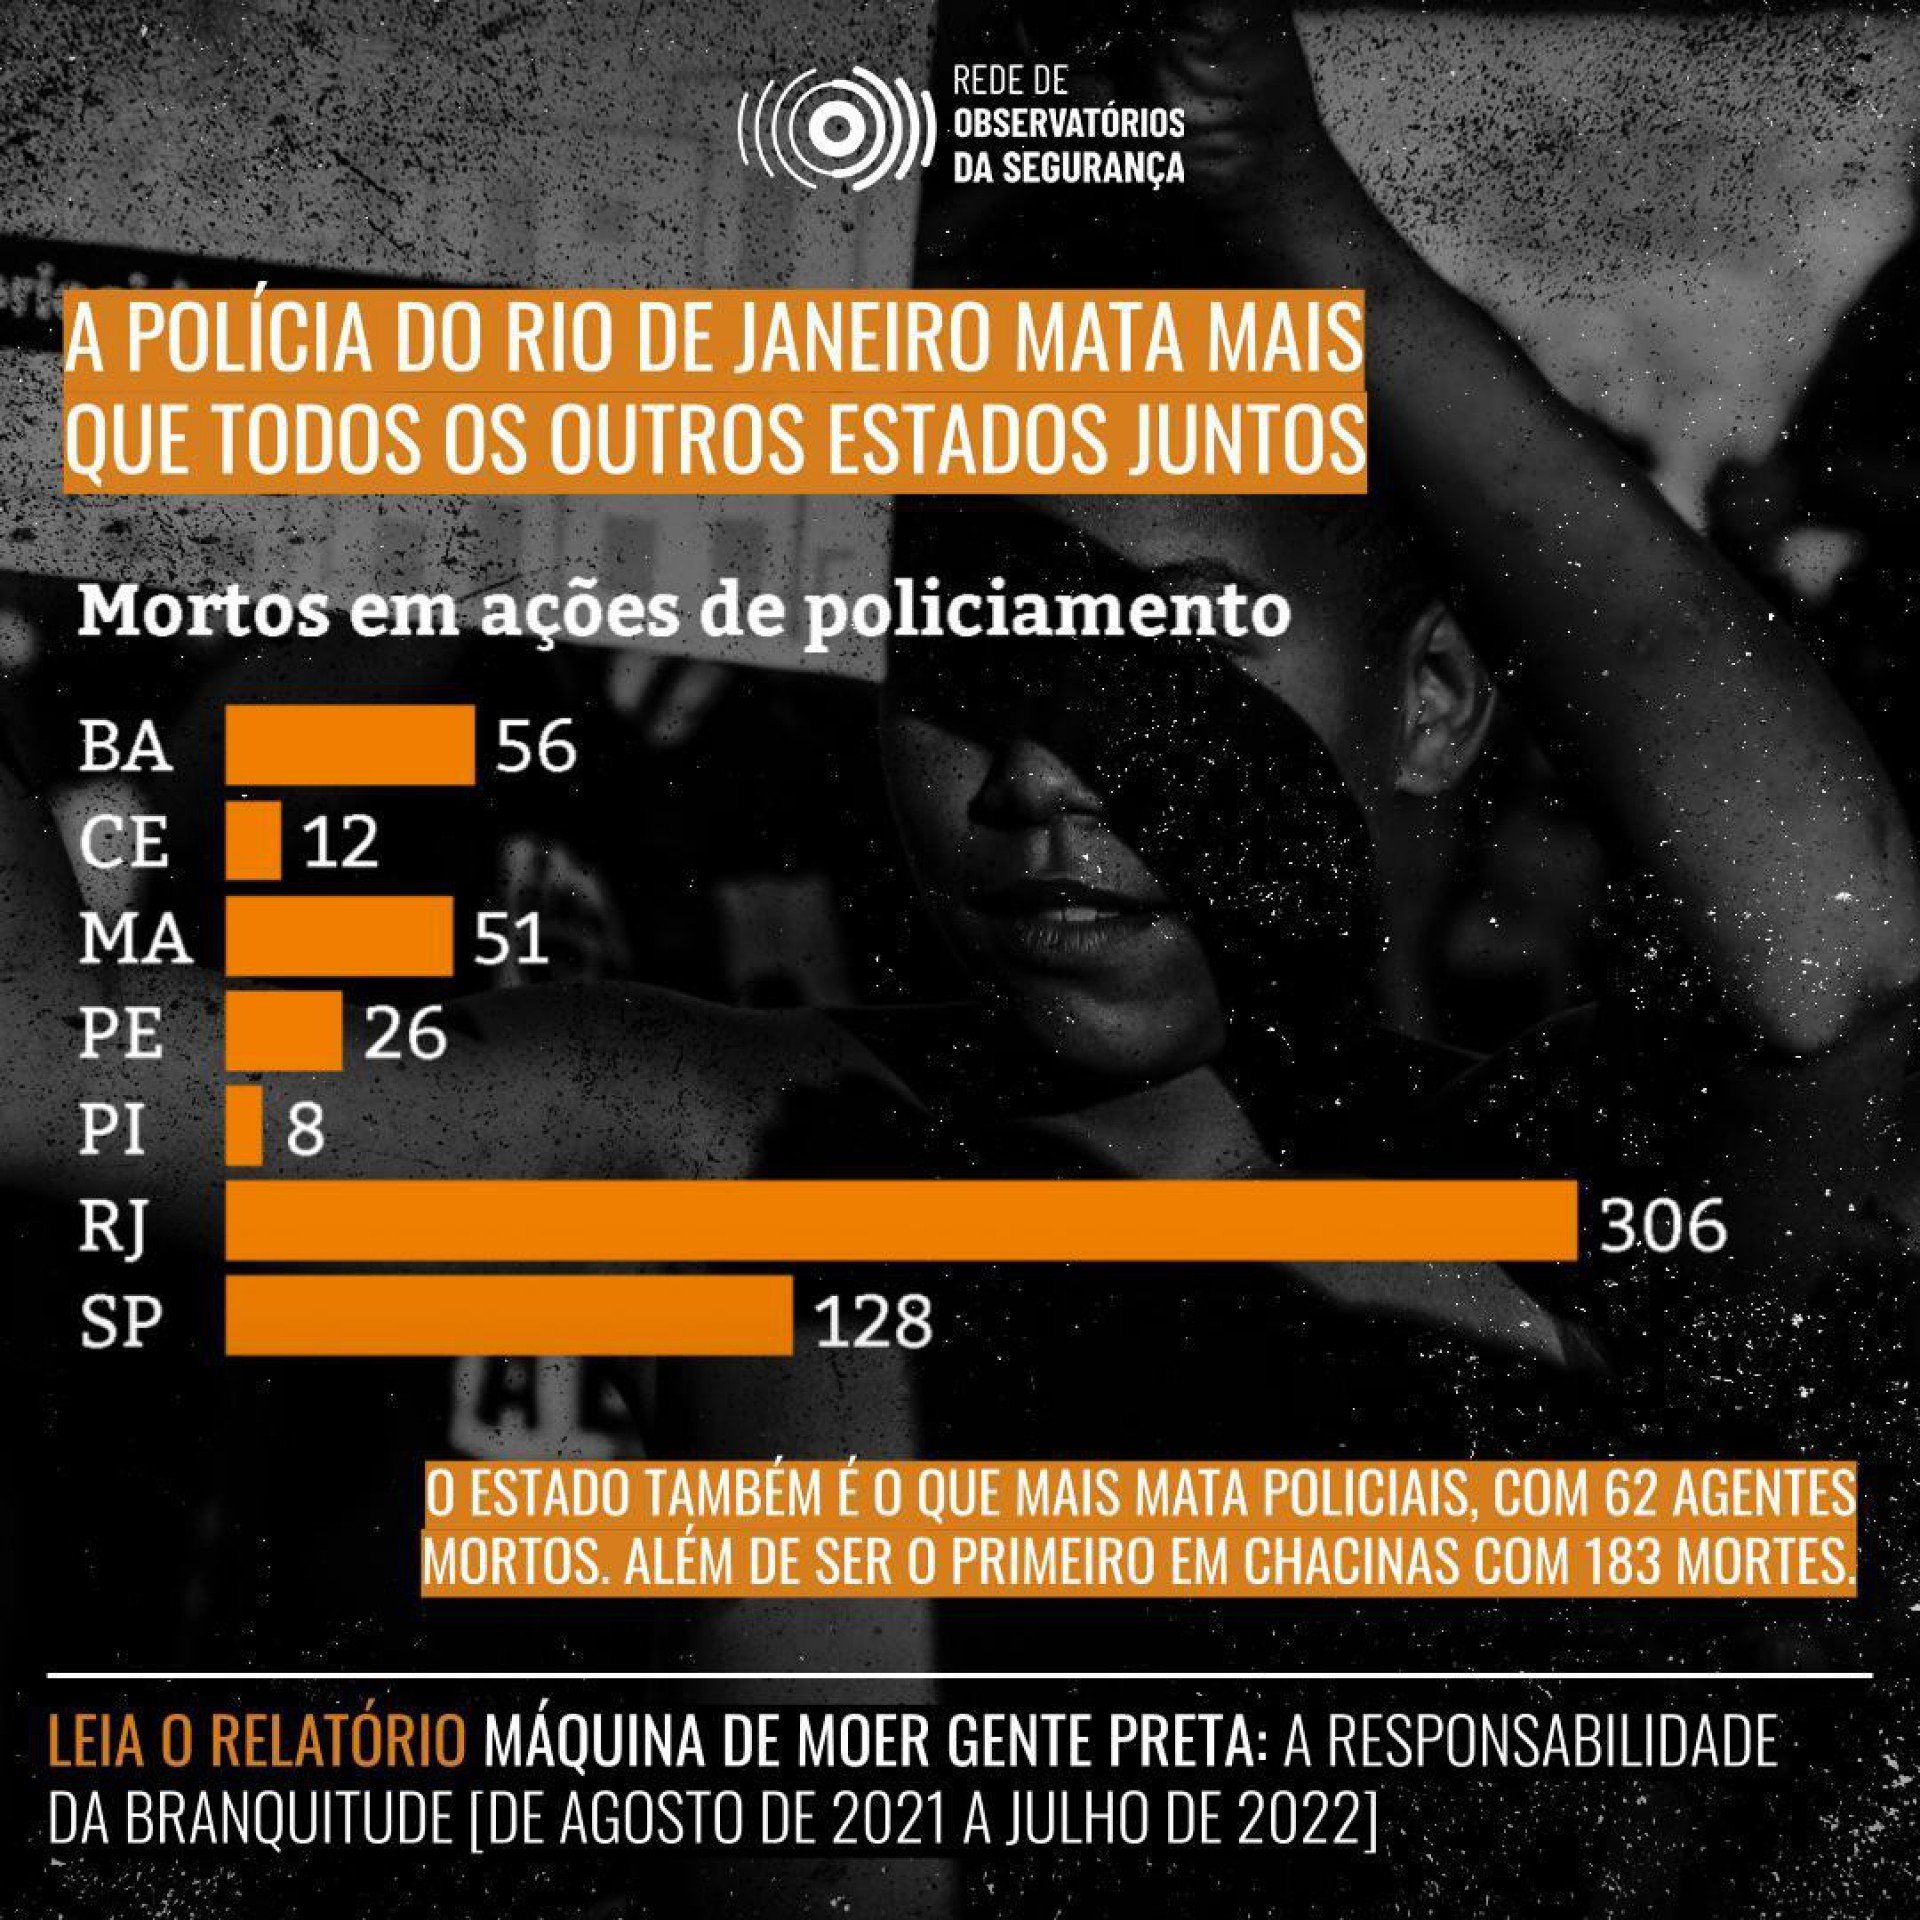 Se somarmos todas as mortes registradas nos cinco estados do Nordeste analisados mais o estado de São Paulo, o resultado é de 281 mortos em 12 meses. No Rio, esse número totalizou 306 mortes - Divulgação